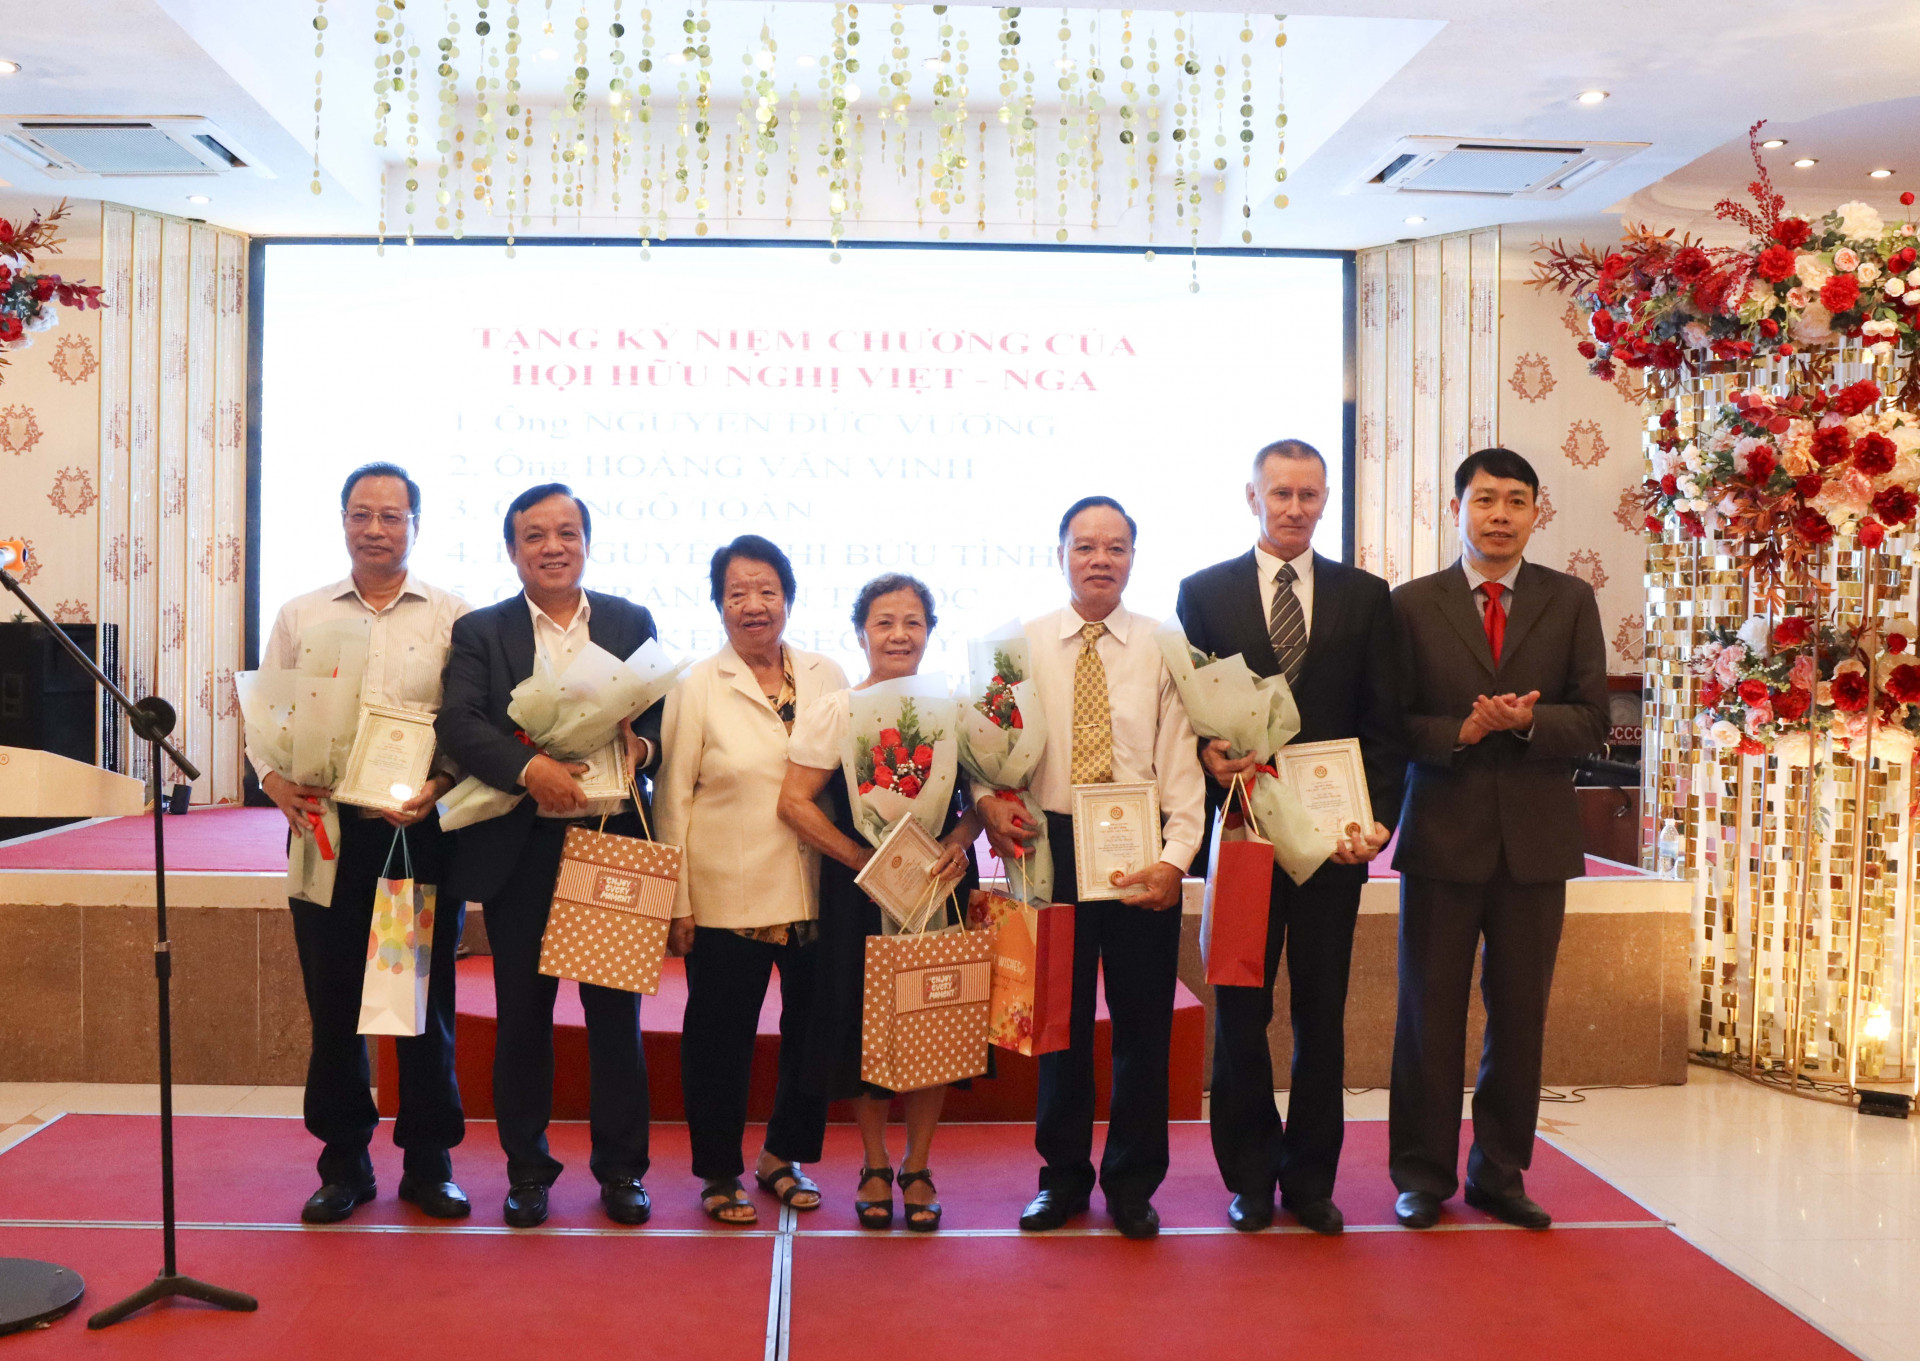 Lãnh đạo Liên hiệp các tổ chức hữu nghị tỉnh Khánh Hòa và đại diện Hội hữu nghị Việt Nam - Liên bang Nga trao kỷ niệm chương cho các cá nhân có nhiều đóng góp cho công tác hội